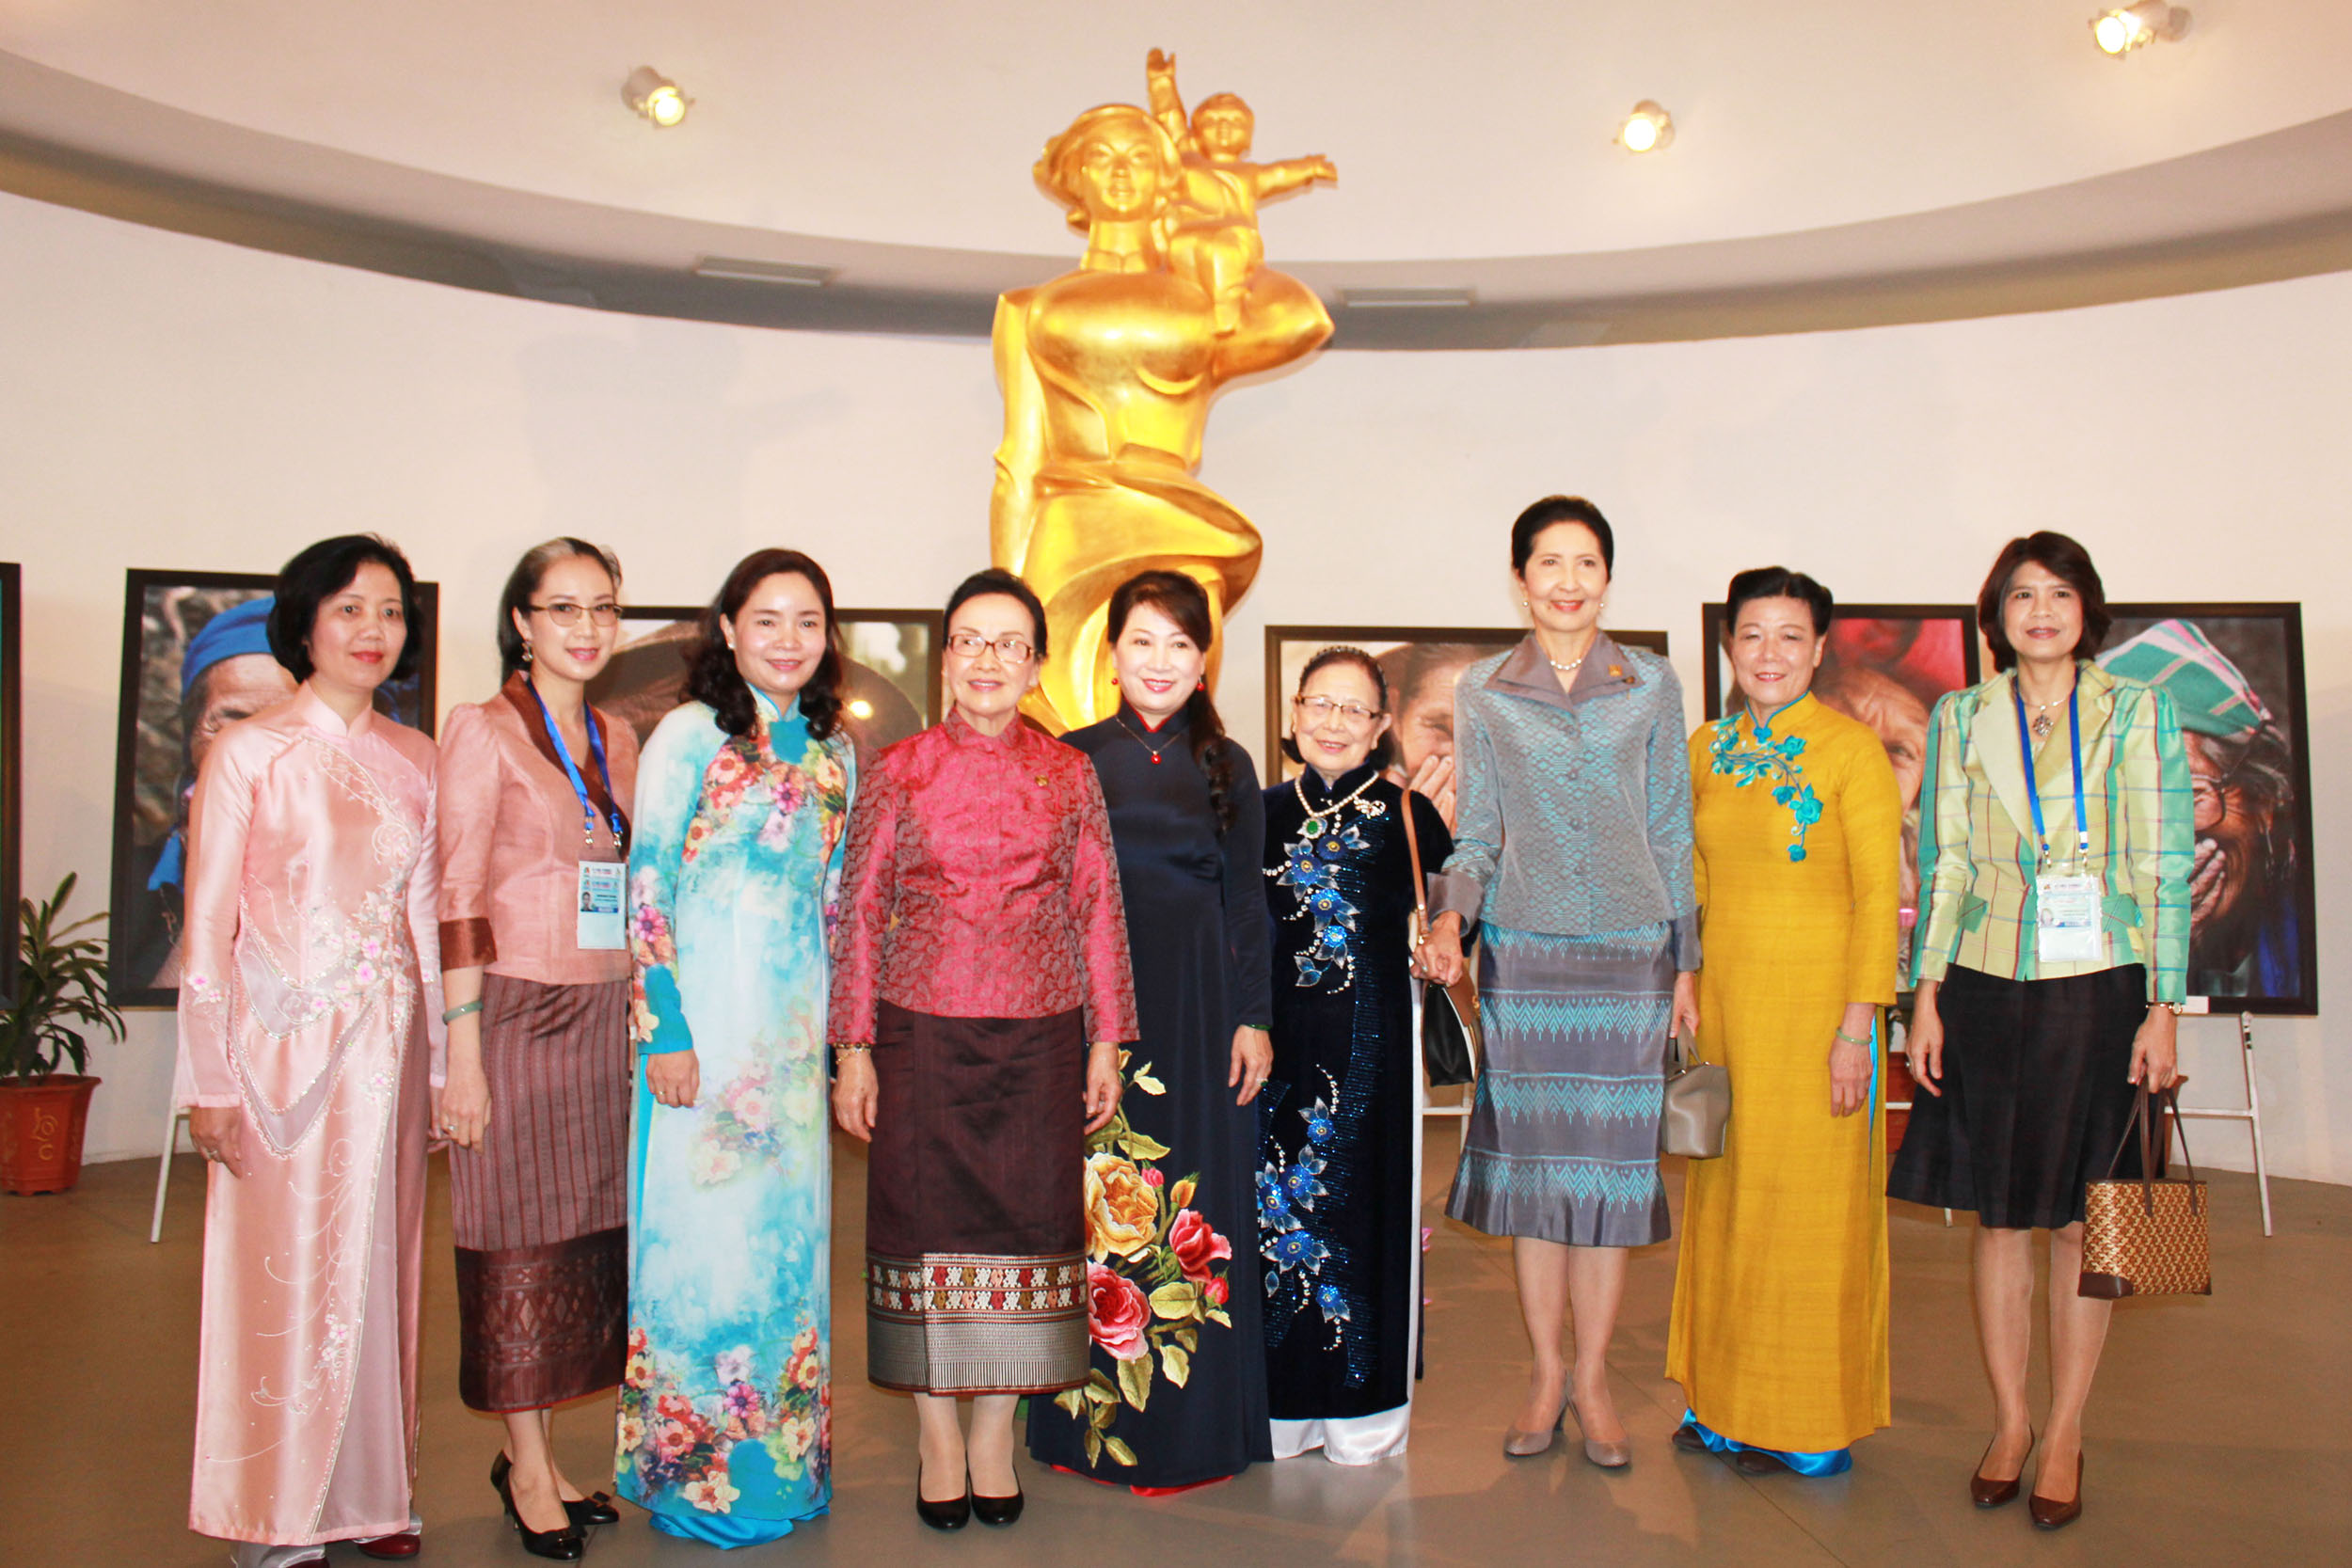 Bà Nguyễn Thị Bích Vân - Giám đốc Bảo tàng Phụ nữ Việt Nam - đã đón tiếp các phu nhân và giới thiệu cặn kẽ về bảo tàng, về truyền thống anh hùng của người phụ nữ Việt Nam cũng như vai trò của họ trong cuộc sống thường nhật.